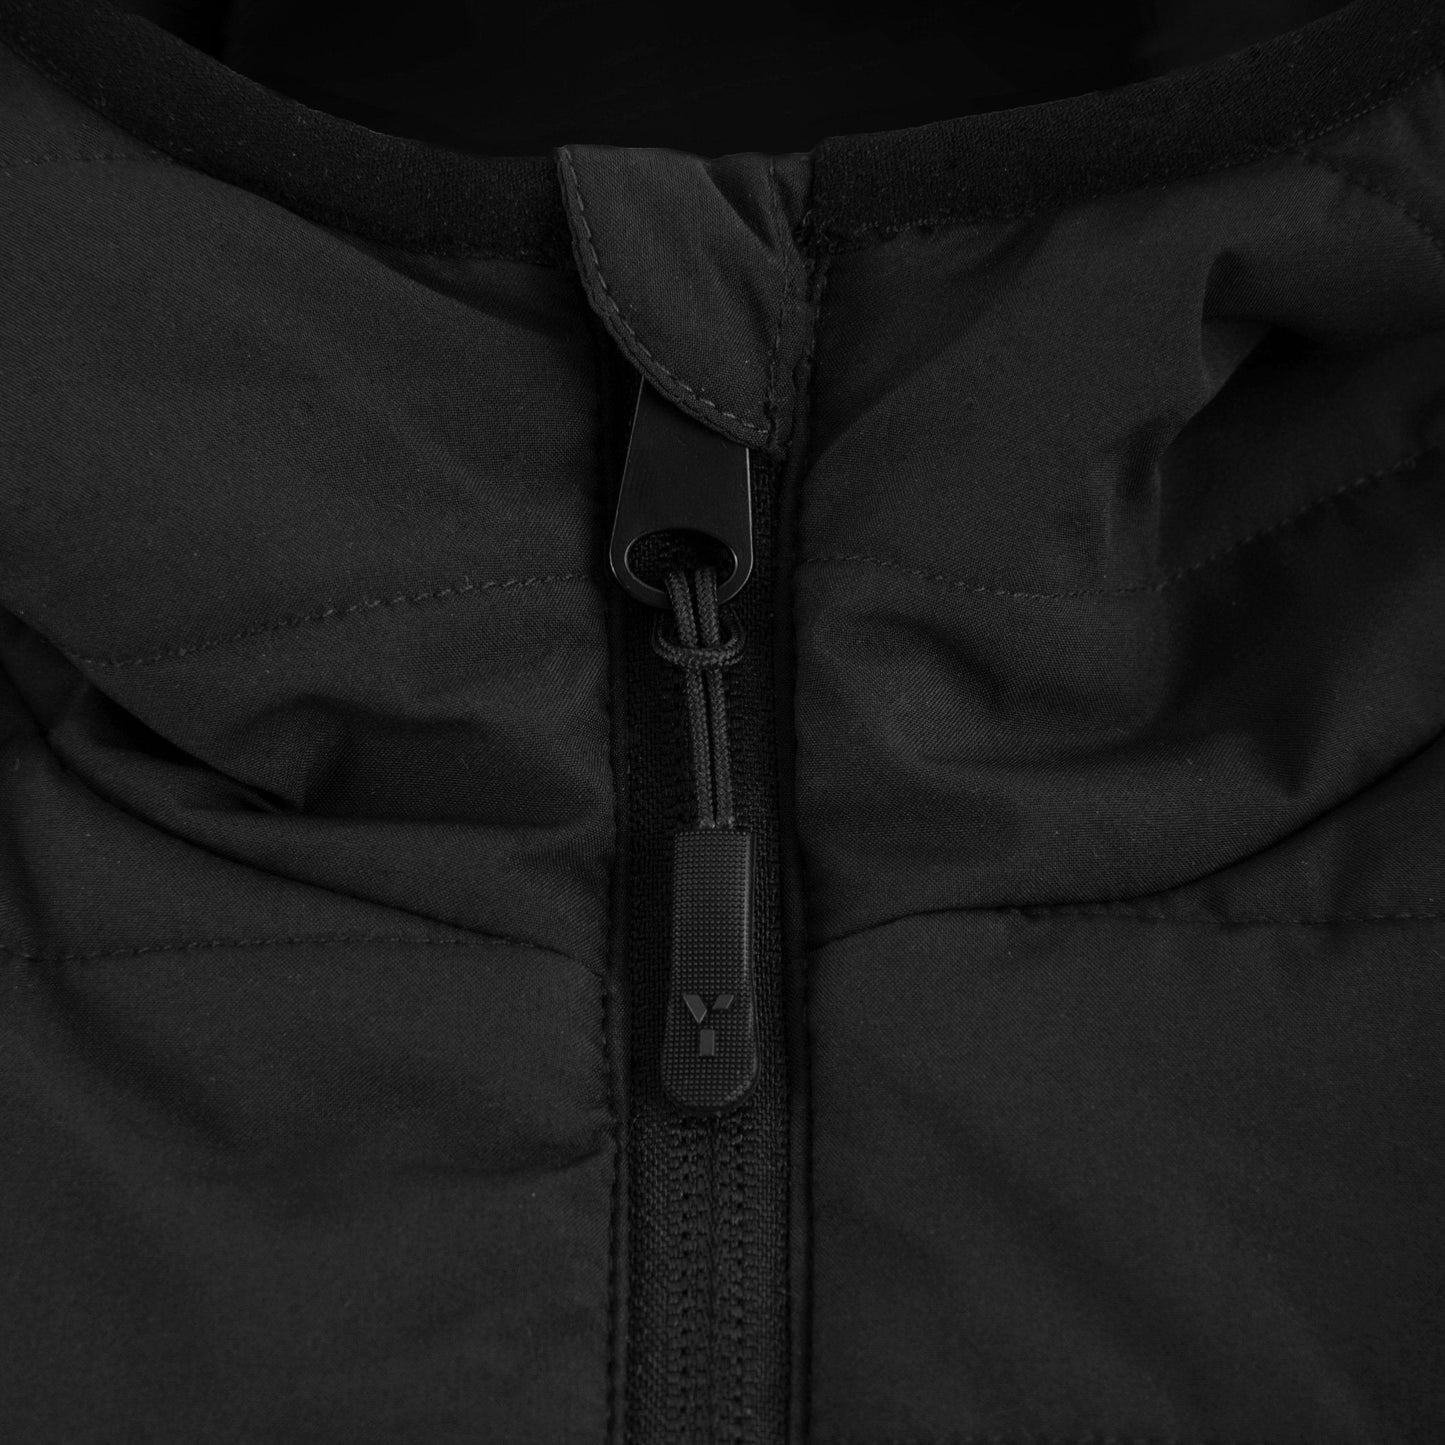 Wales Masters - Padded Jacket Unisex Black